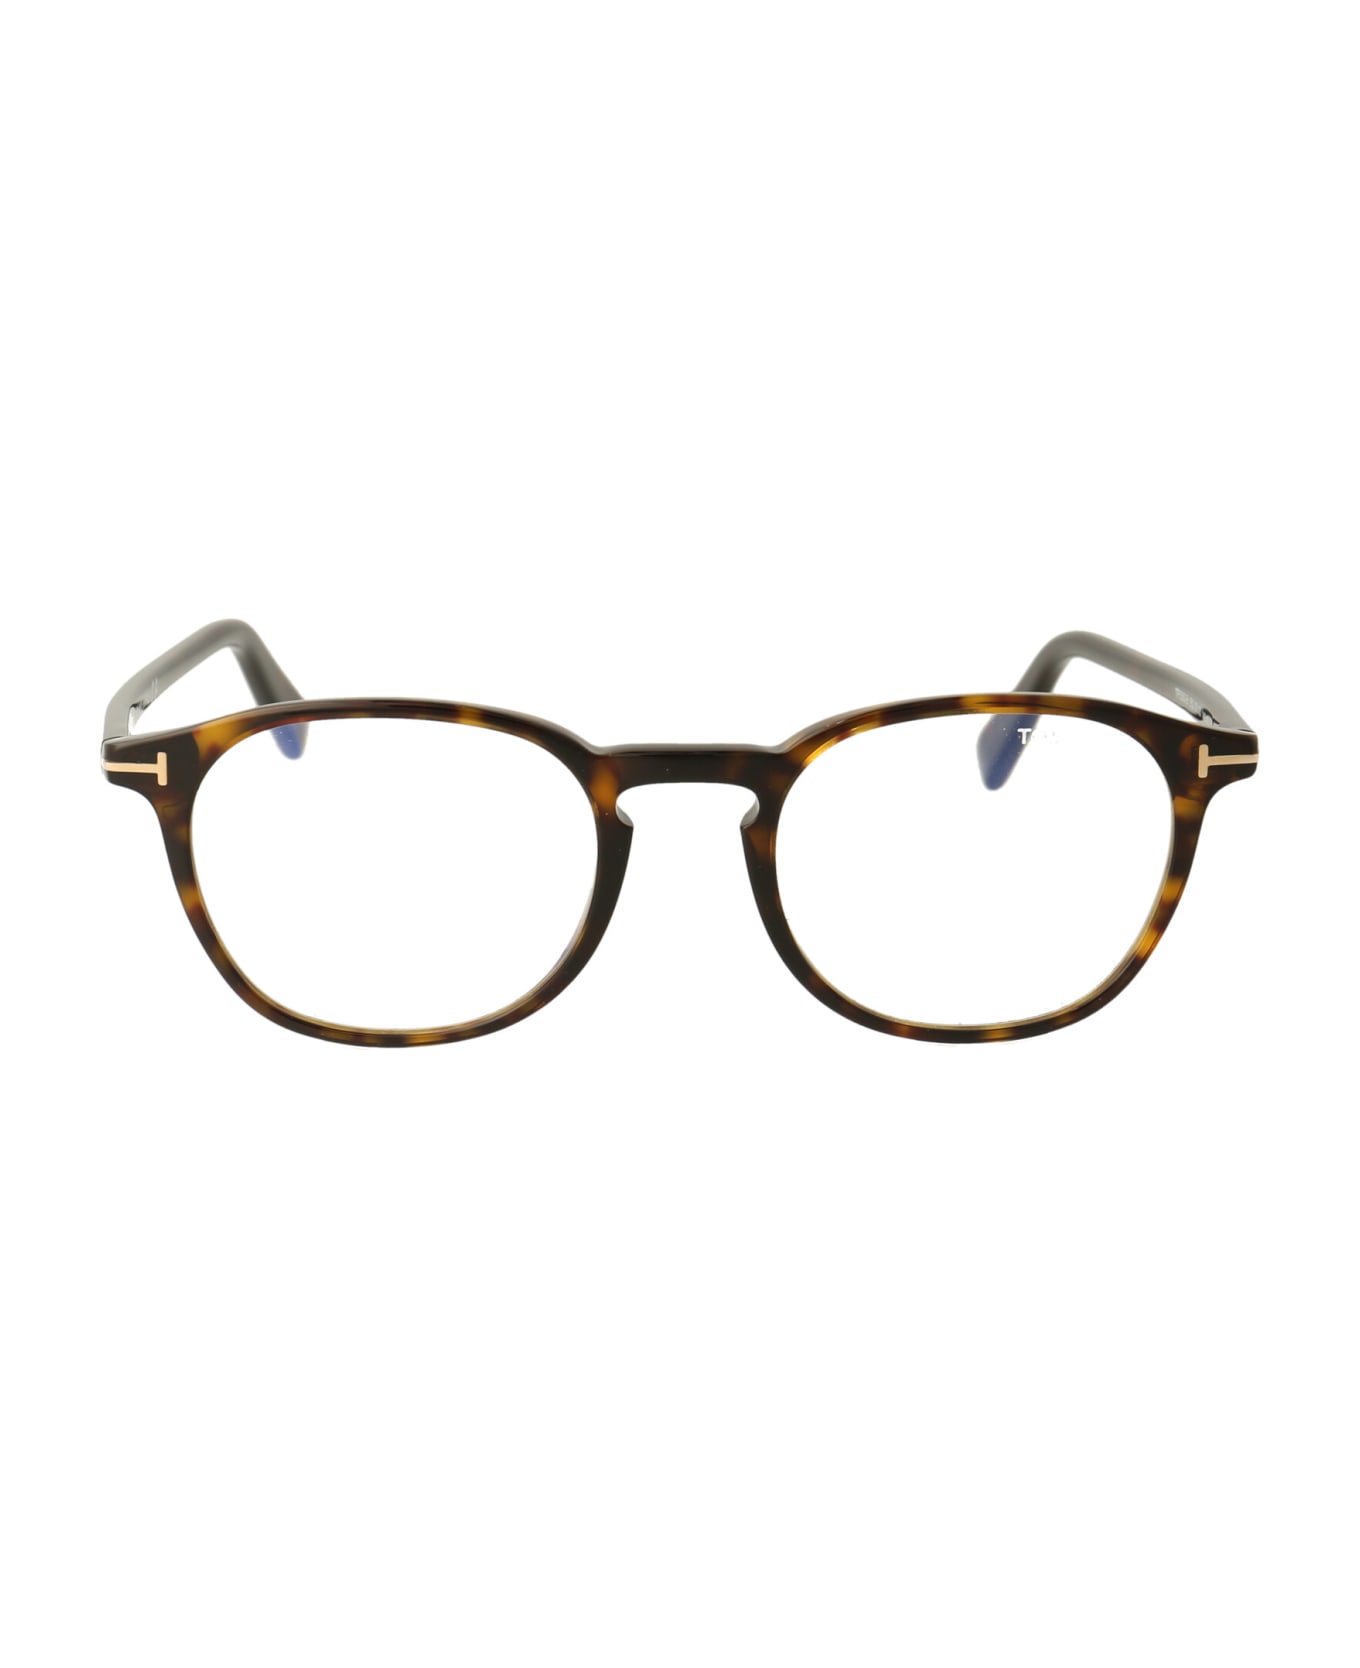 Tom Ford Eyewear Ft5583-b Glasses - 052 Avana Scura アイウェア